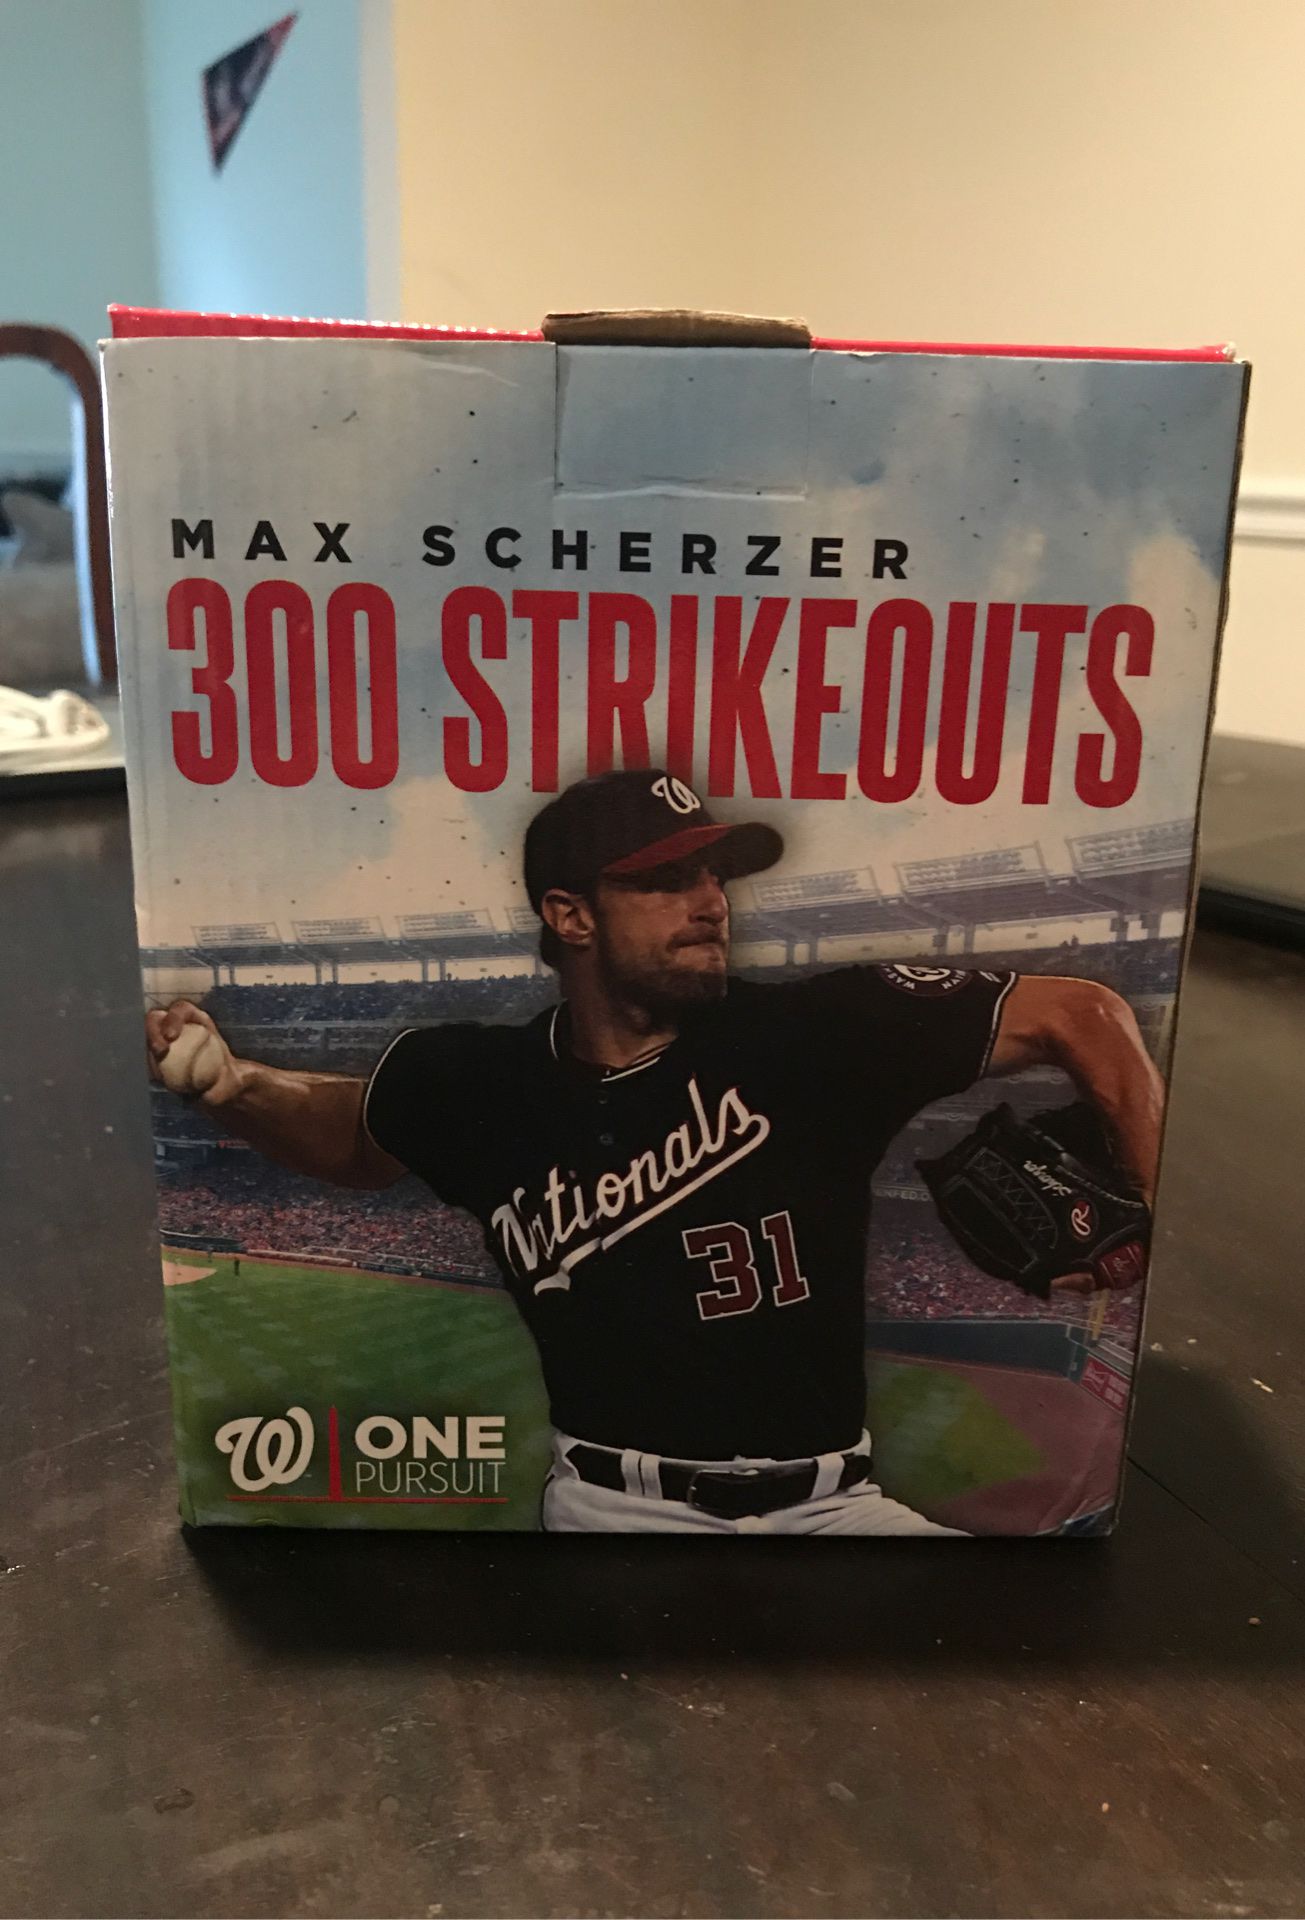 Max Scherzer Bobblehead (300 Strikeouts)